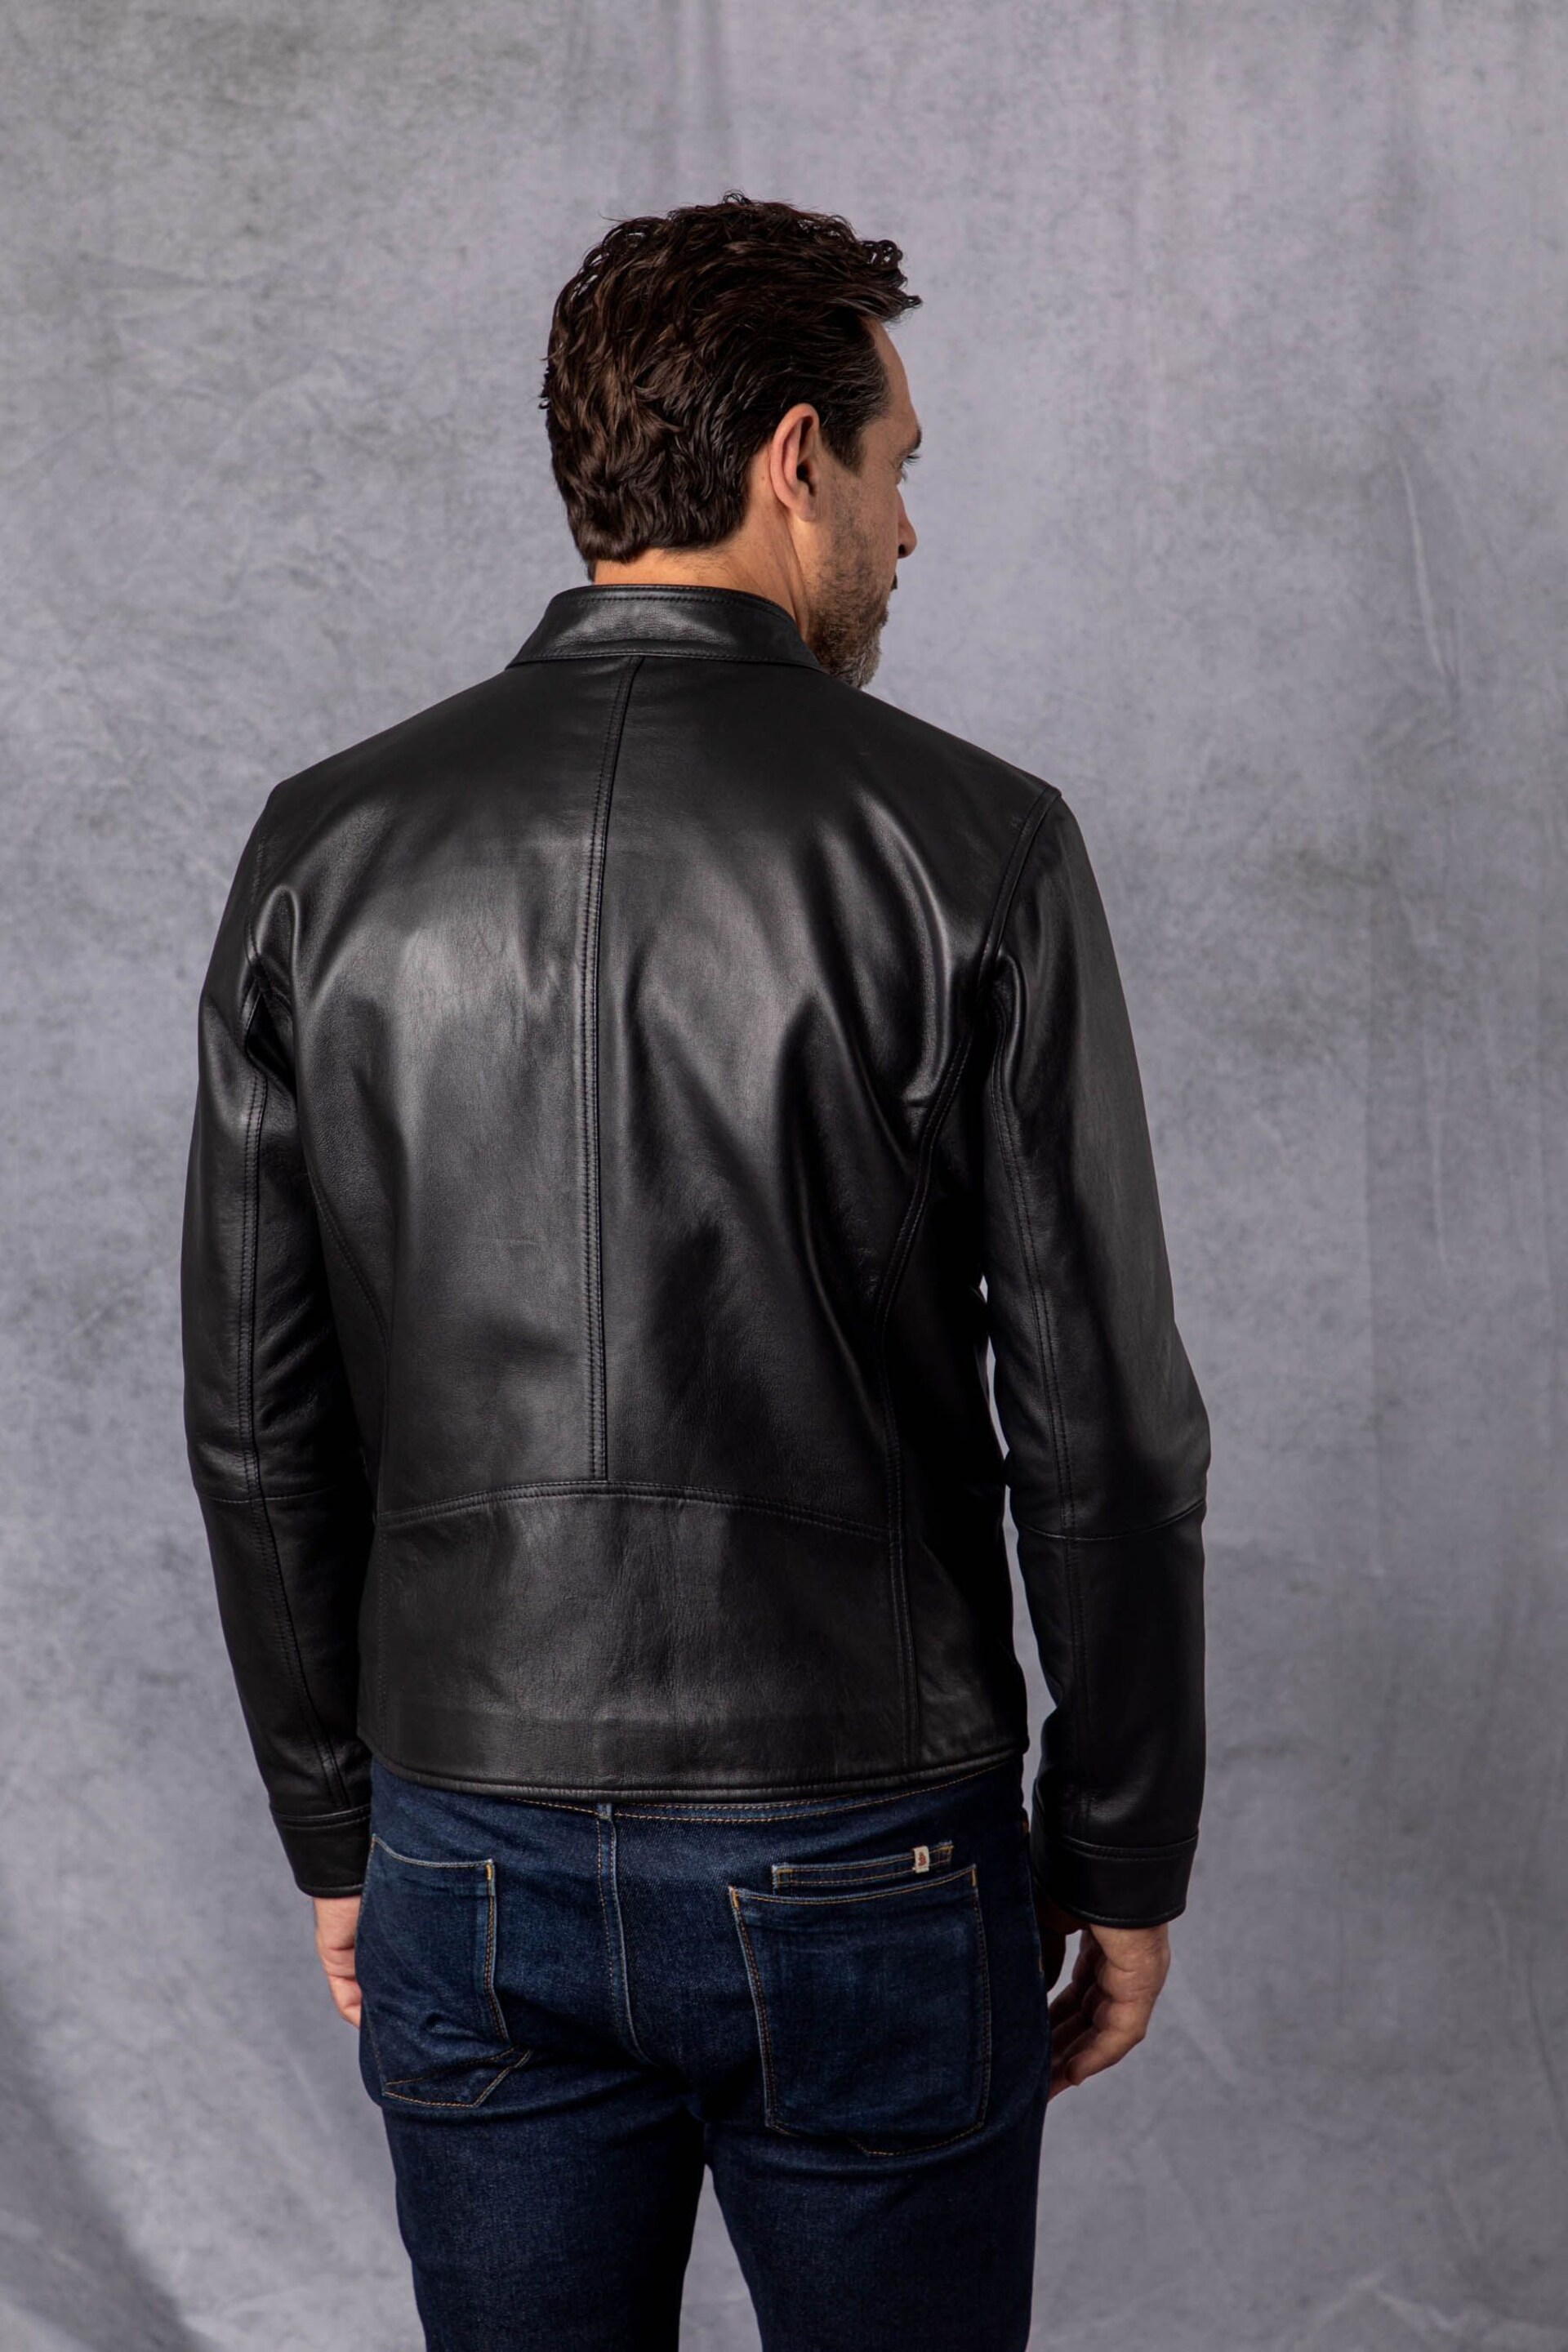 Lakeland Leather Black Corby Leather Jacket - Image 3 of 6